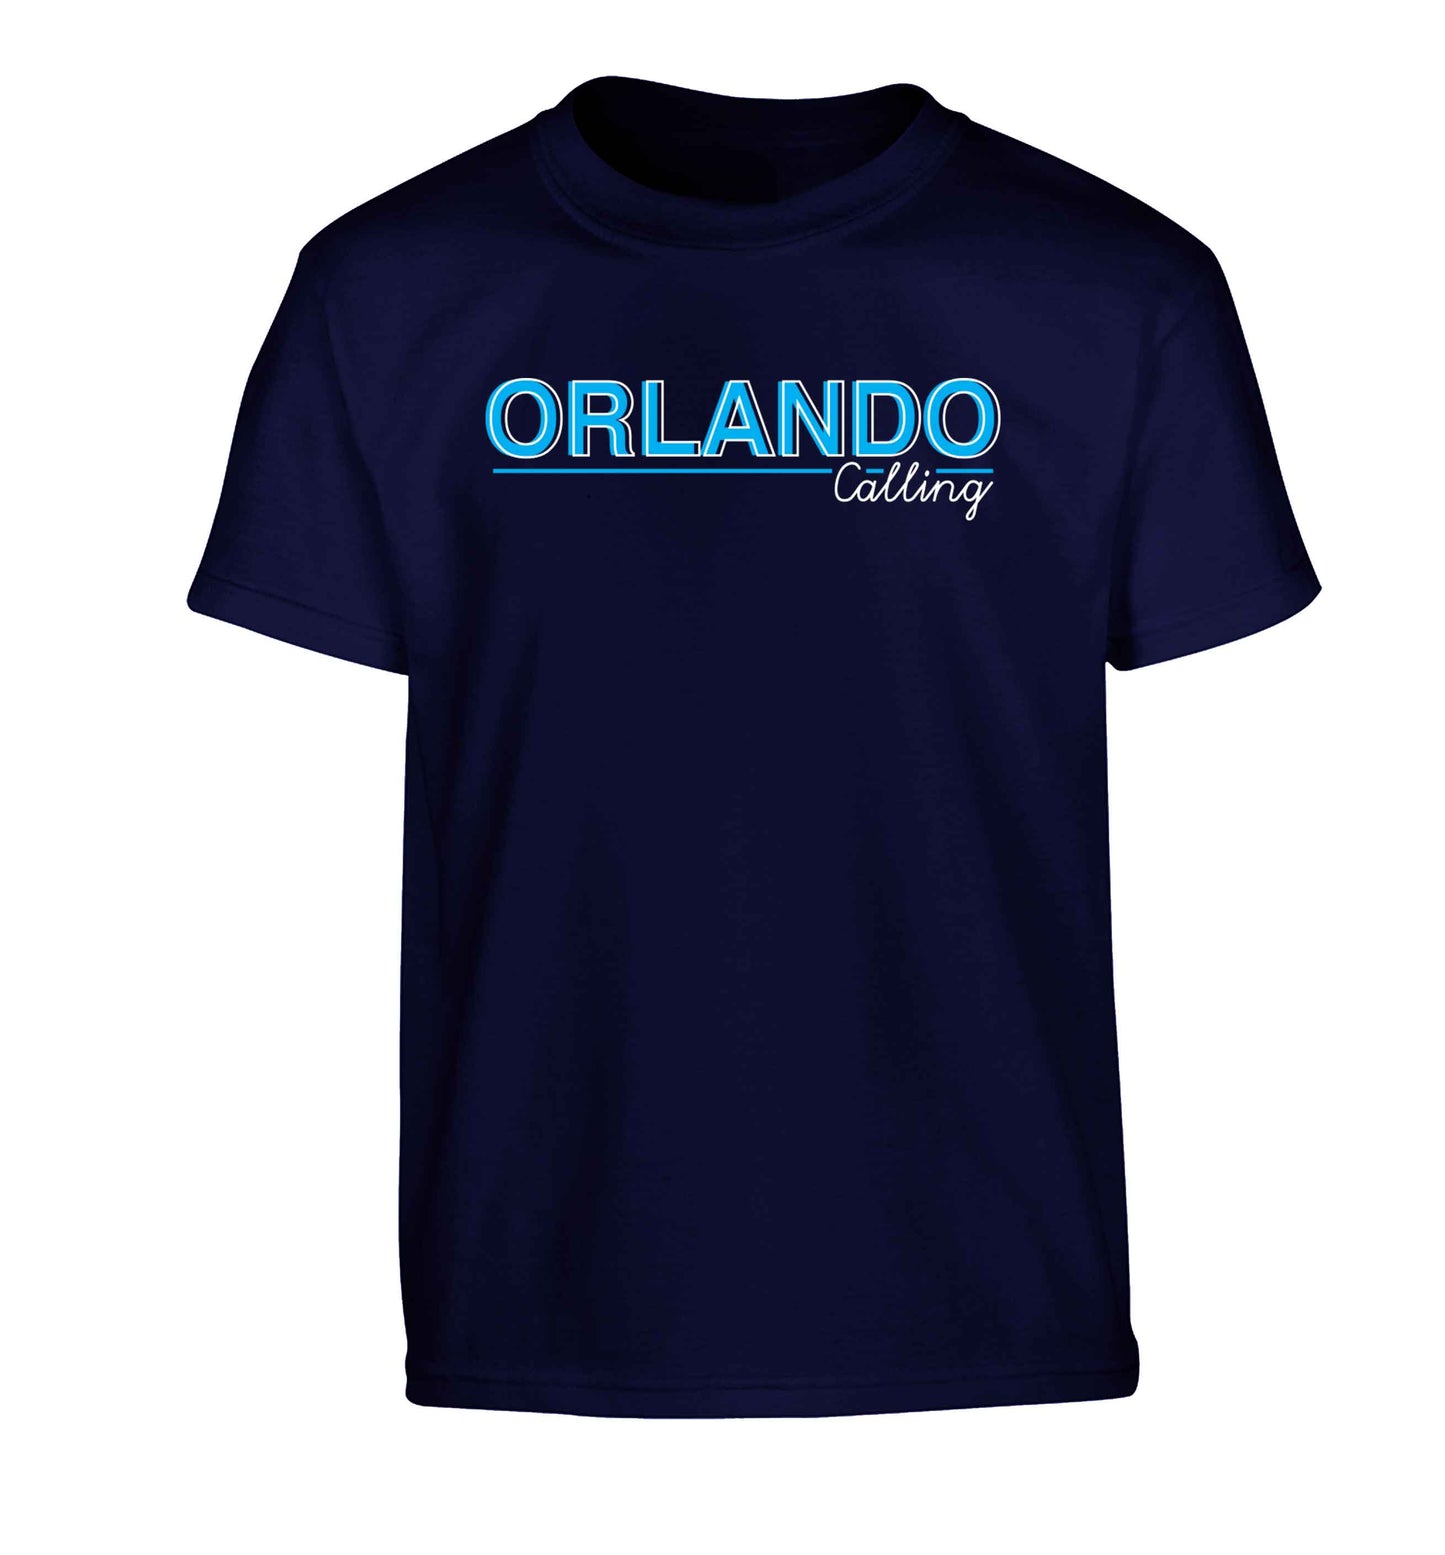 Orlando calling Children's navy Tshirt 12-13 Years